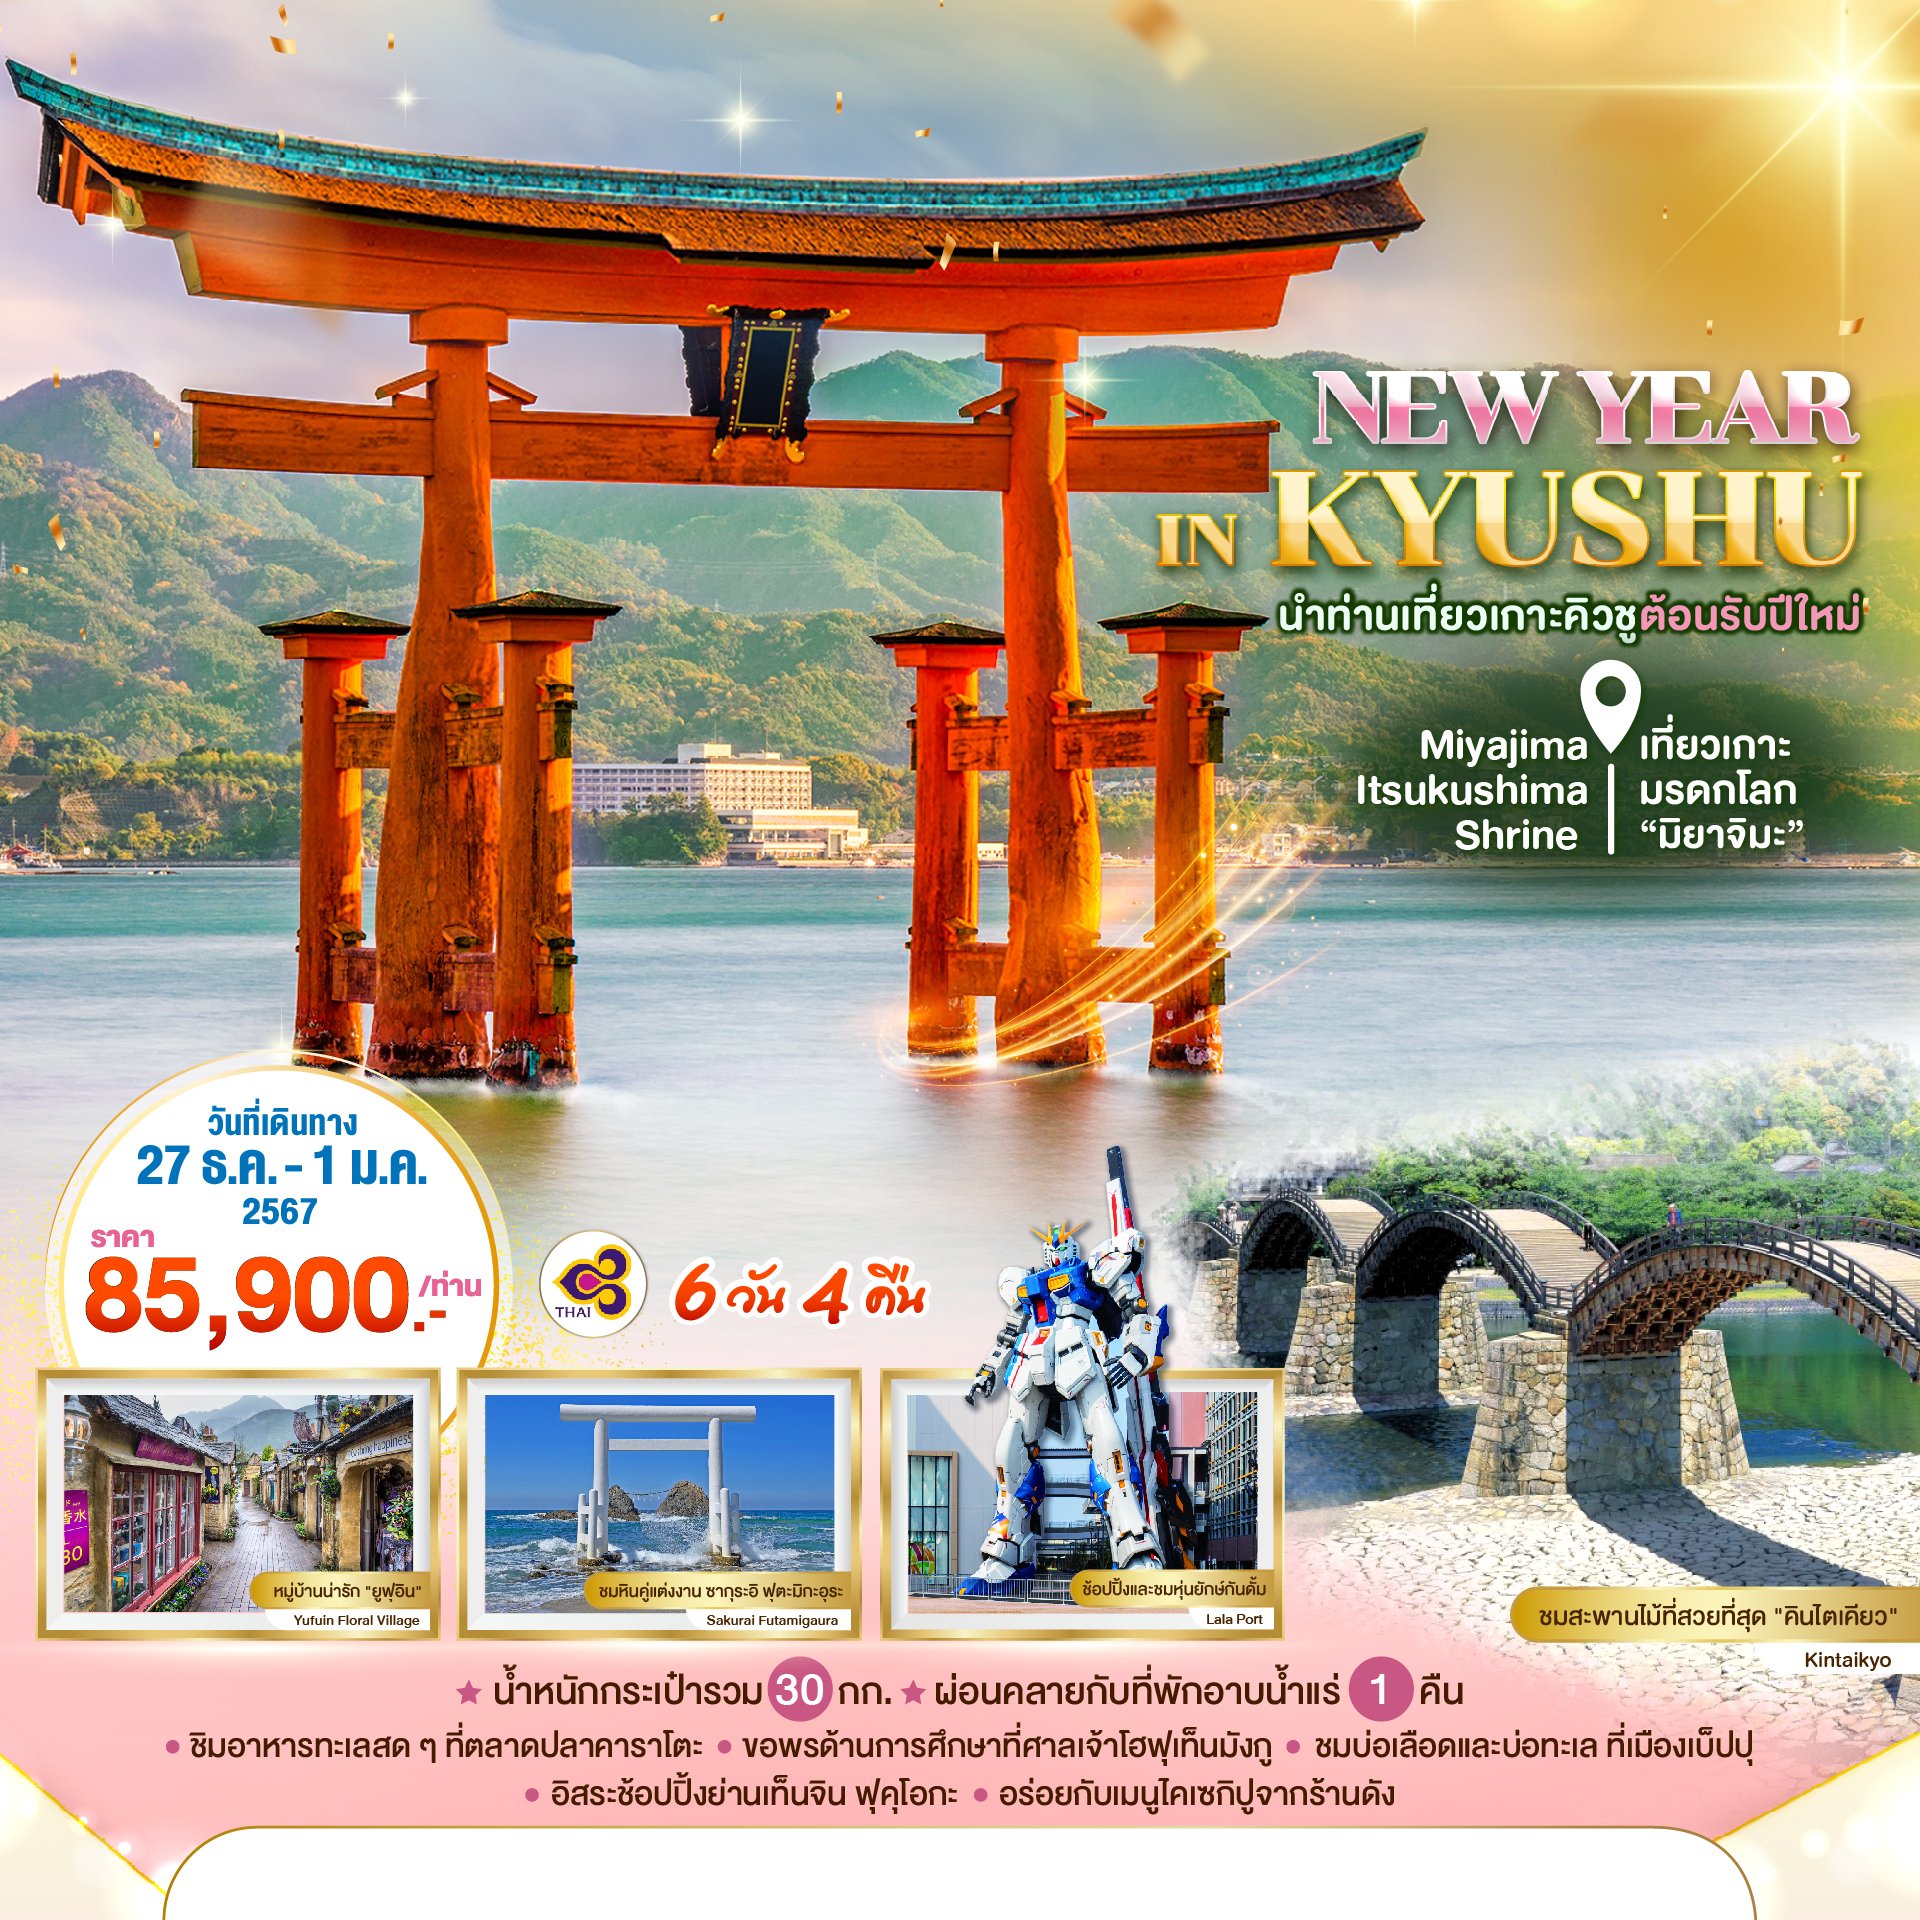 ทัวร์ญี่ปุ่น : NEW YEAR IN KYUSHU 6 DAYS 4 NIGHTS